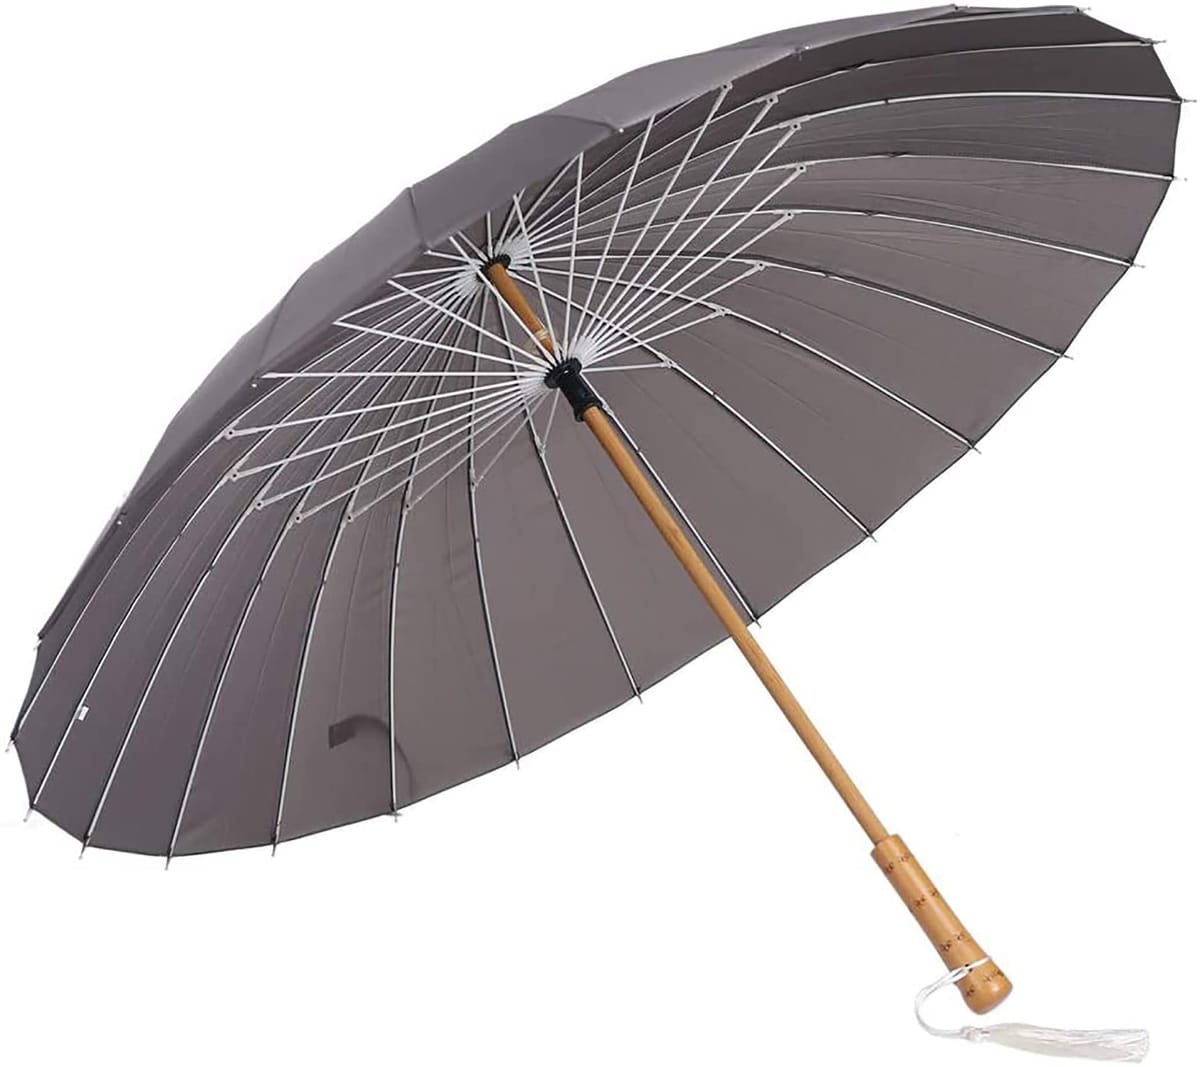 Lanx. 和傘 和風 軽い 24本骨 晴れ 雨 兼用 梅雨 対策 木製 手元 長傘 雨傘 番傘 紳士傘 耐風 撥水 グラスファイバー